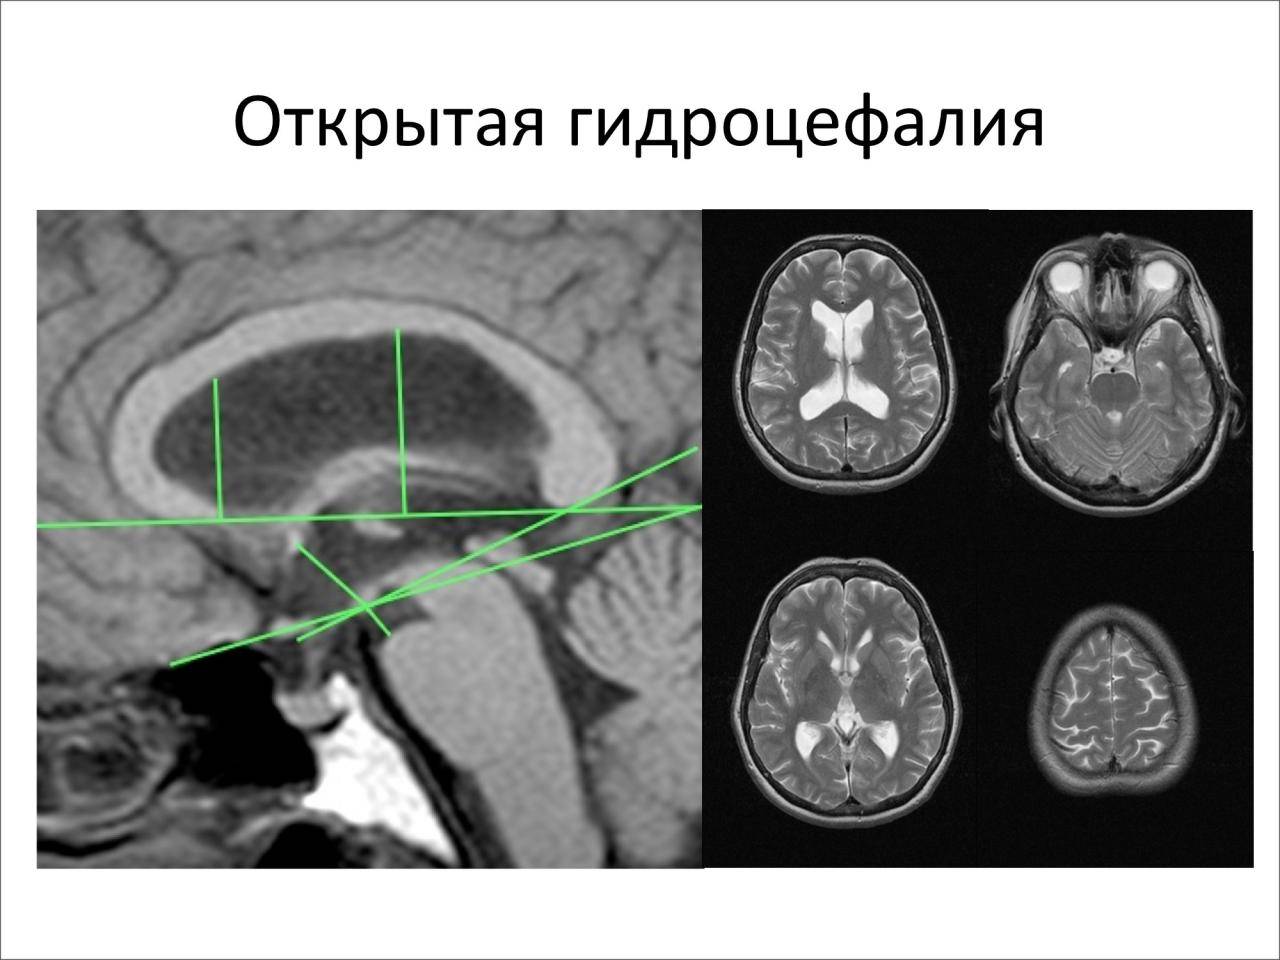 Гидроцефалия головного мозга у взрослого: лечение и симптомы